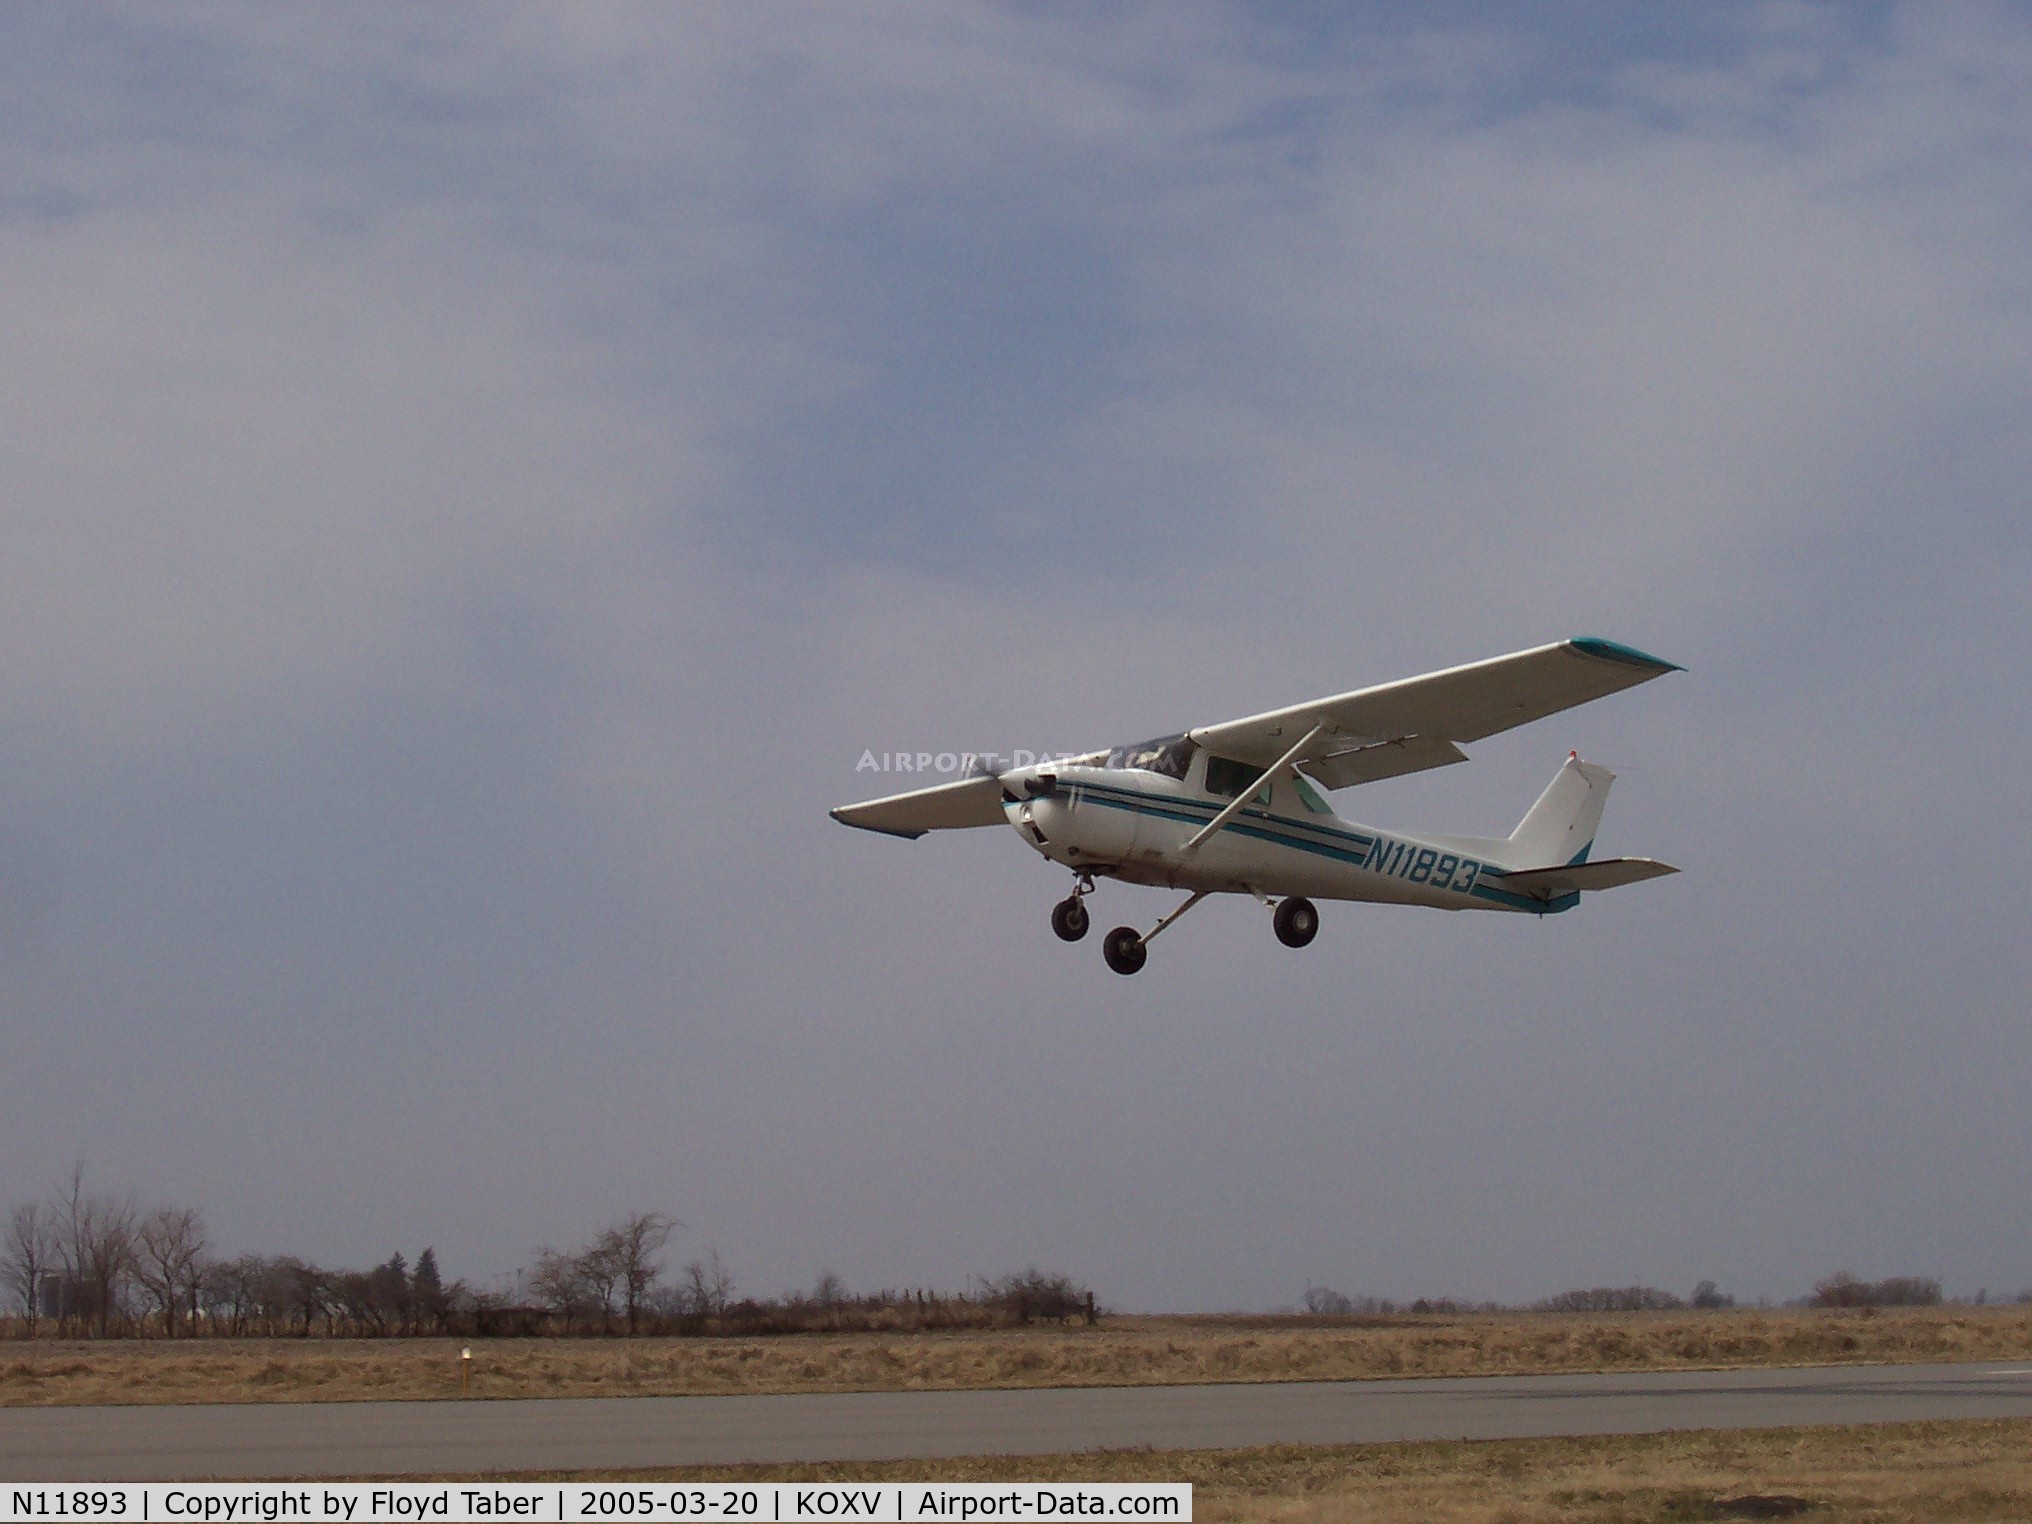 N11893, 1974 Cessna 150L C/N 15075693, Departing Knoxville runway 15R